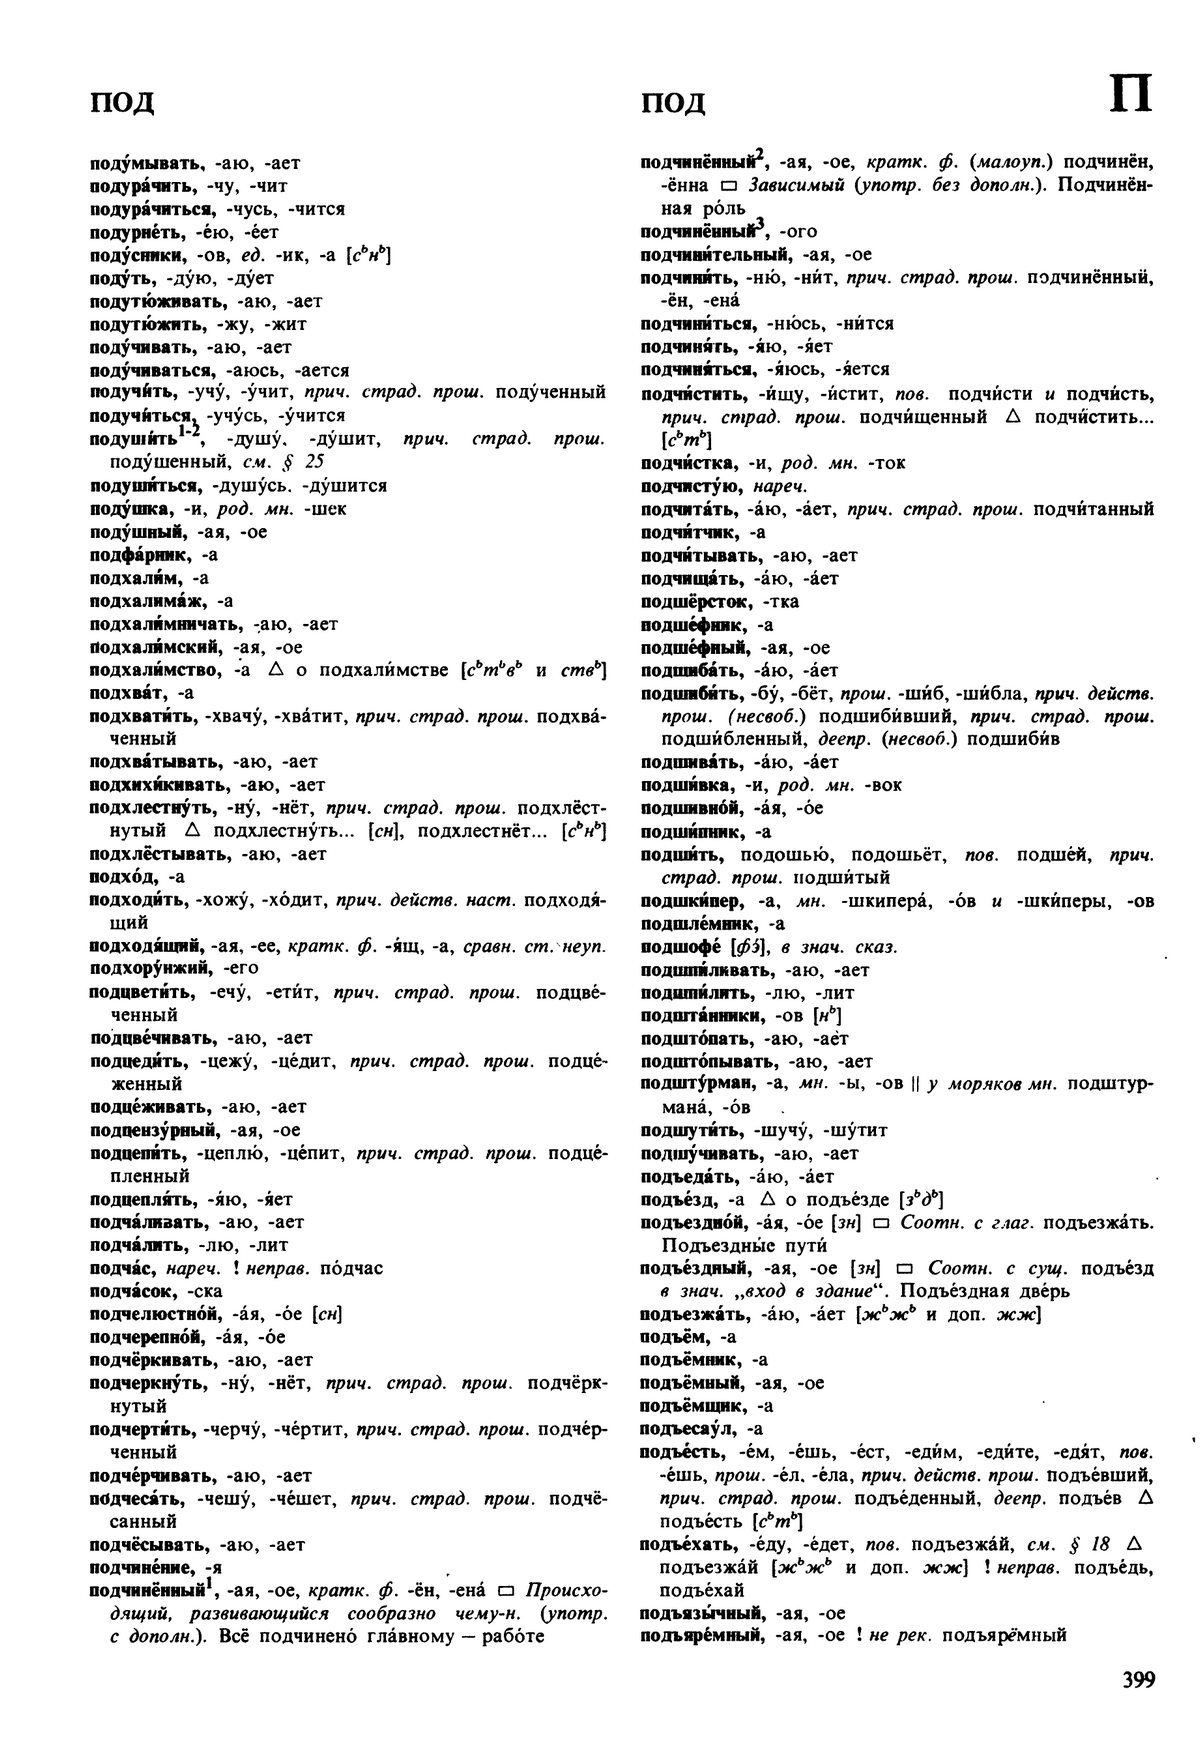 Фотокопия pdf / скан страницы 399 орфоэпического словаря под редакцией Аванесова (5 издание, 1989 год)